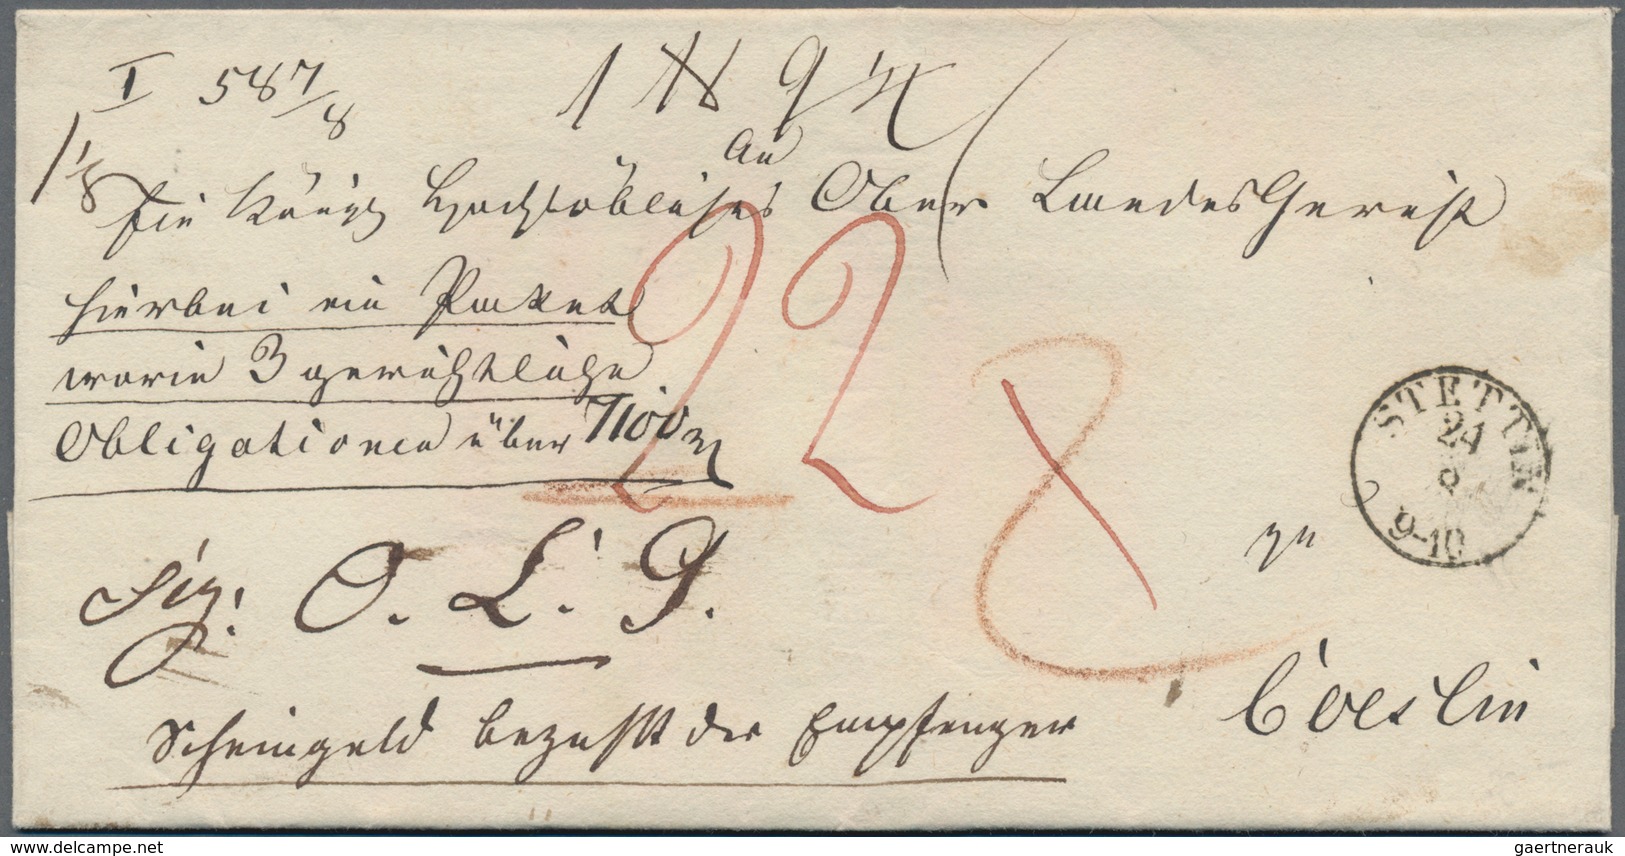 Altdeutschland - Vorphila: 1660/1900 (ca.), vielseitiger Bestand von ca. 270 markenlosen Briefen bzw